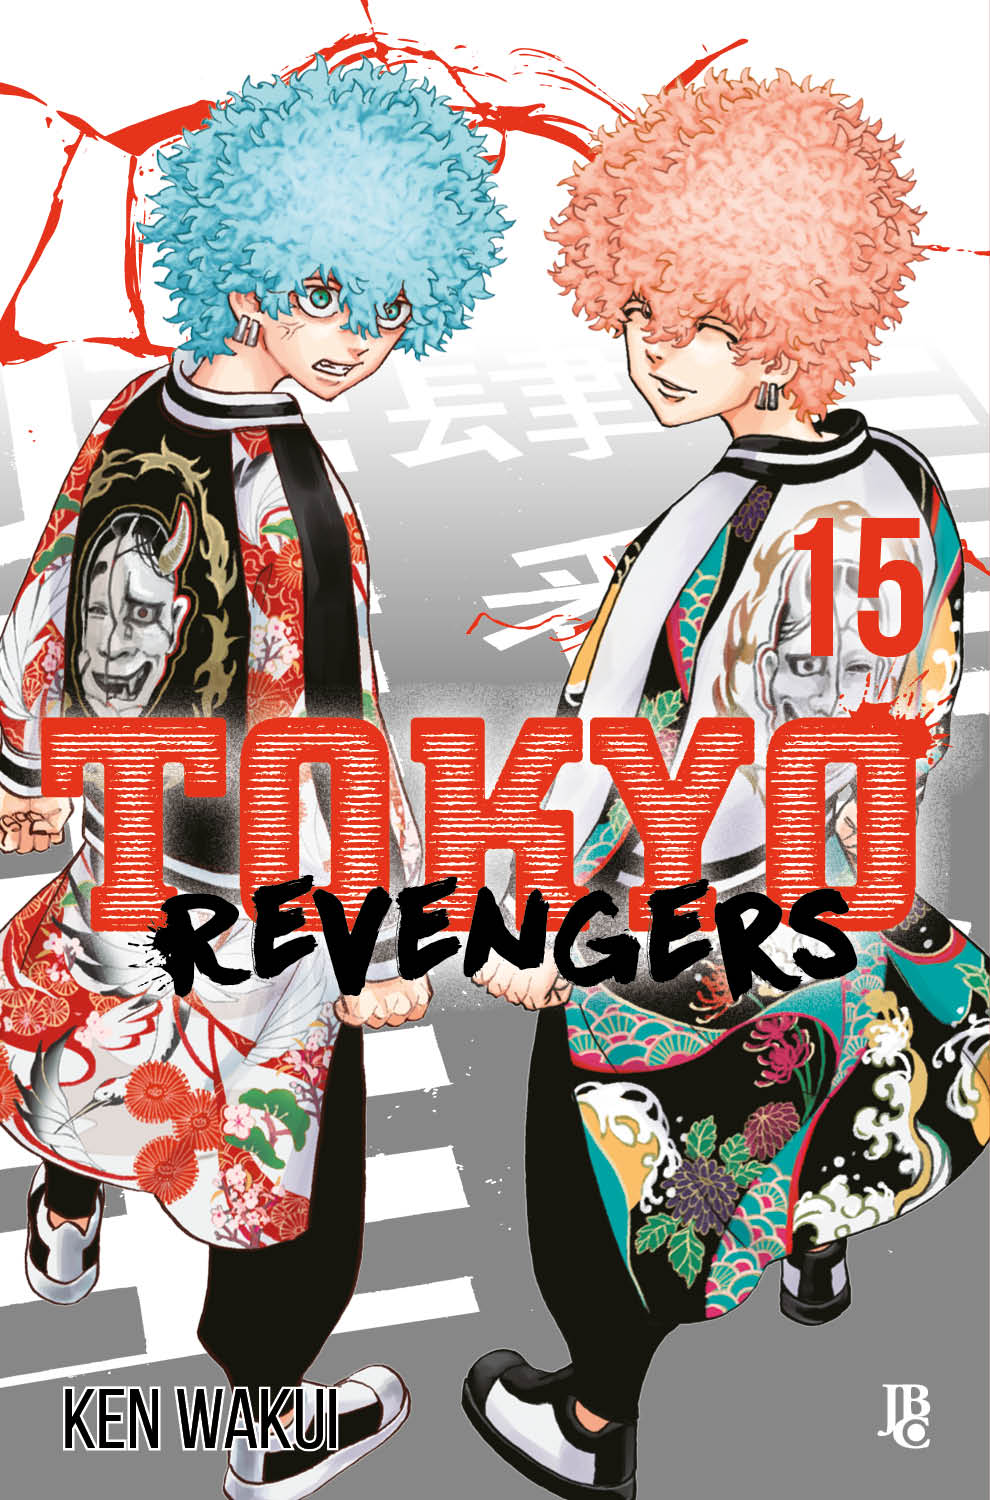 Tokyo Revengers #16 - Mangás JBC